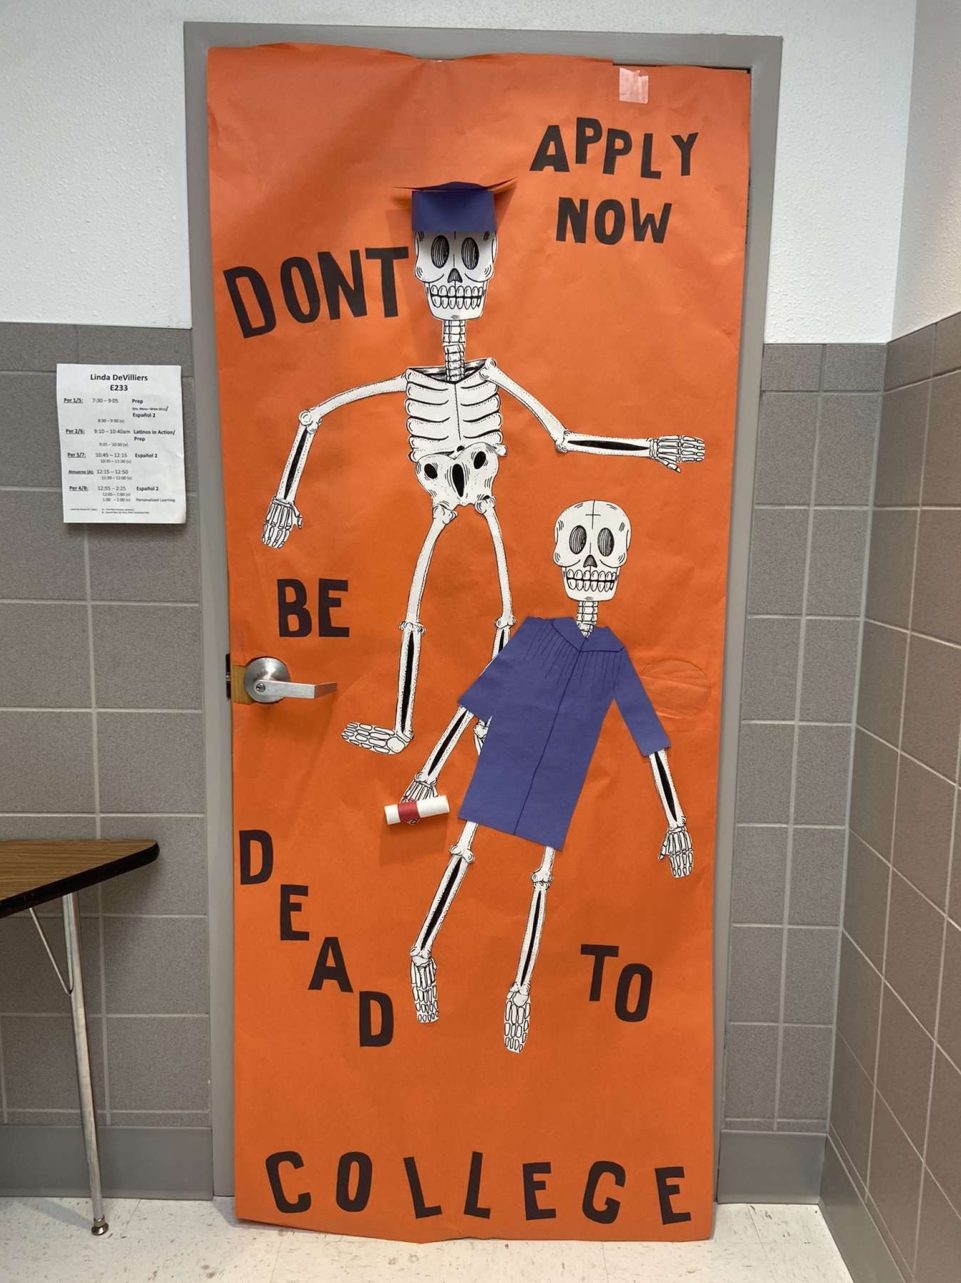 Linda Devilliers, Bingham High School teacher, decorated her door for the application and Halloween season.